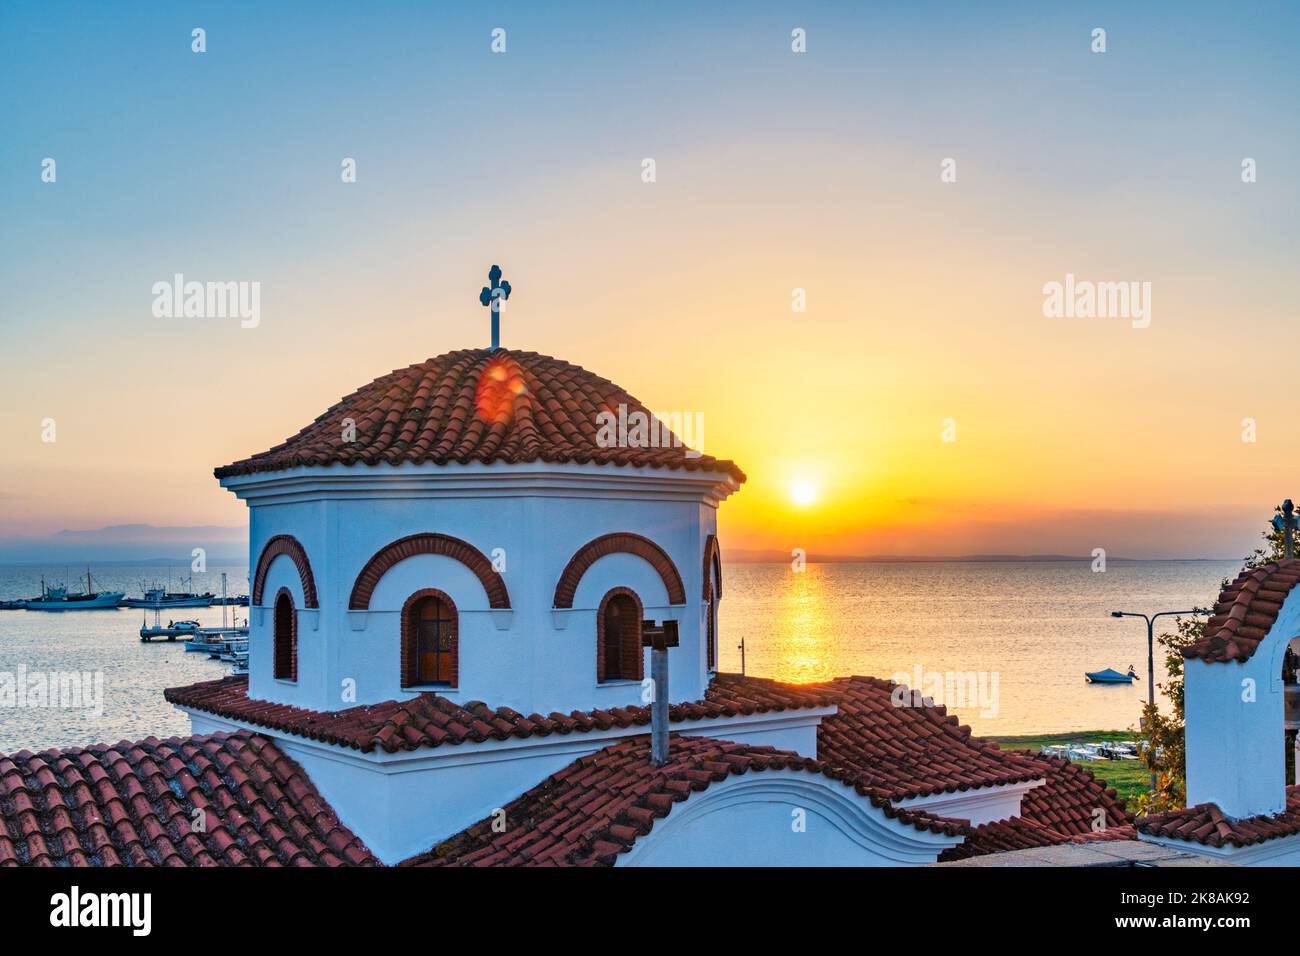 San Nicola in Nea Michaniona bei Thessaloniki bei Sonnenuntergang Foto Stock